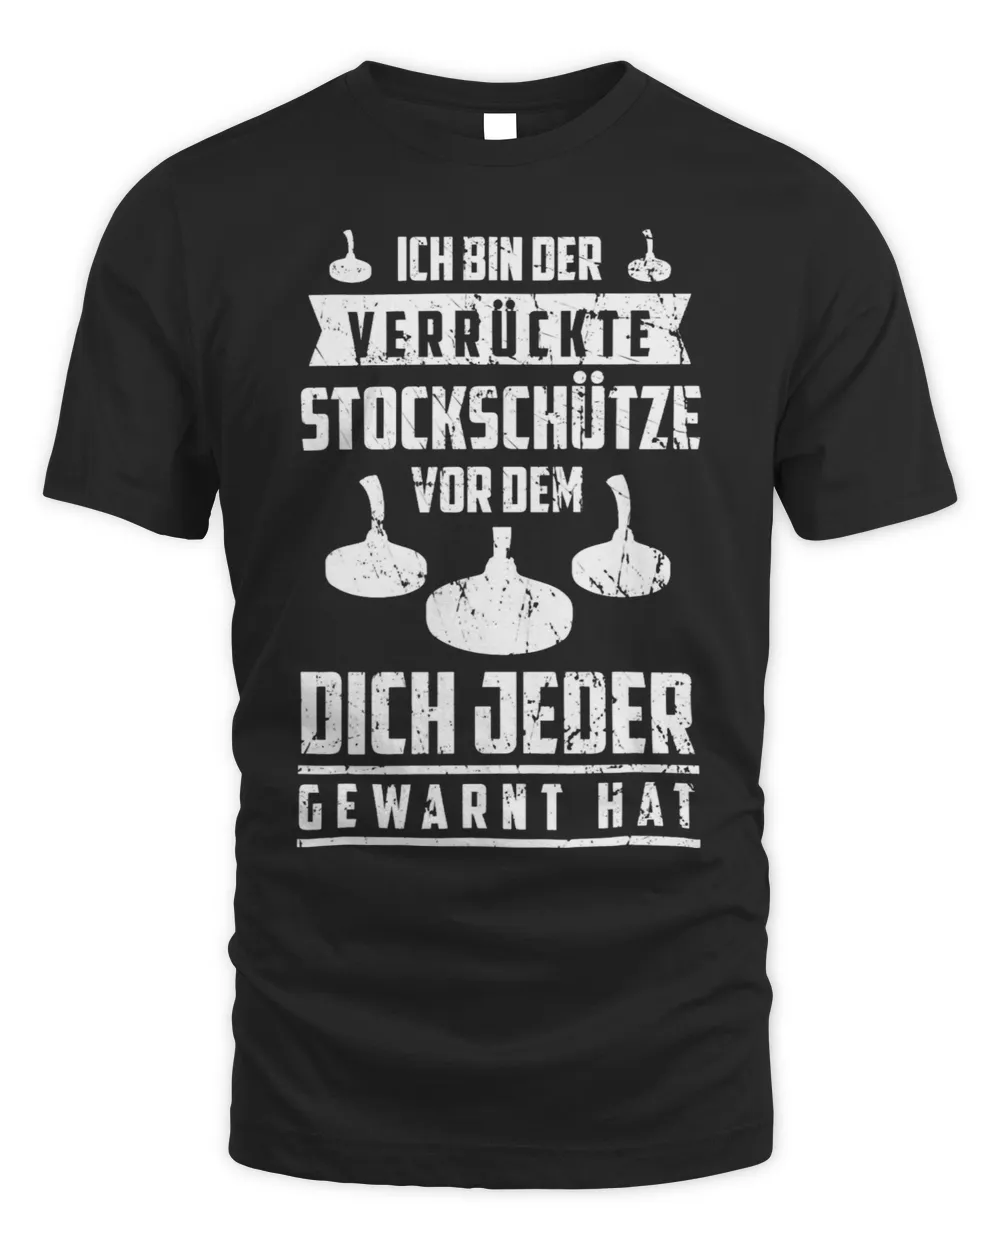 Mens Ich bin der verrückte Stick Schütze Eisstock Shooting Saying [German Language]